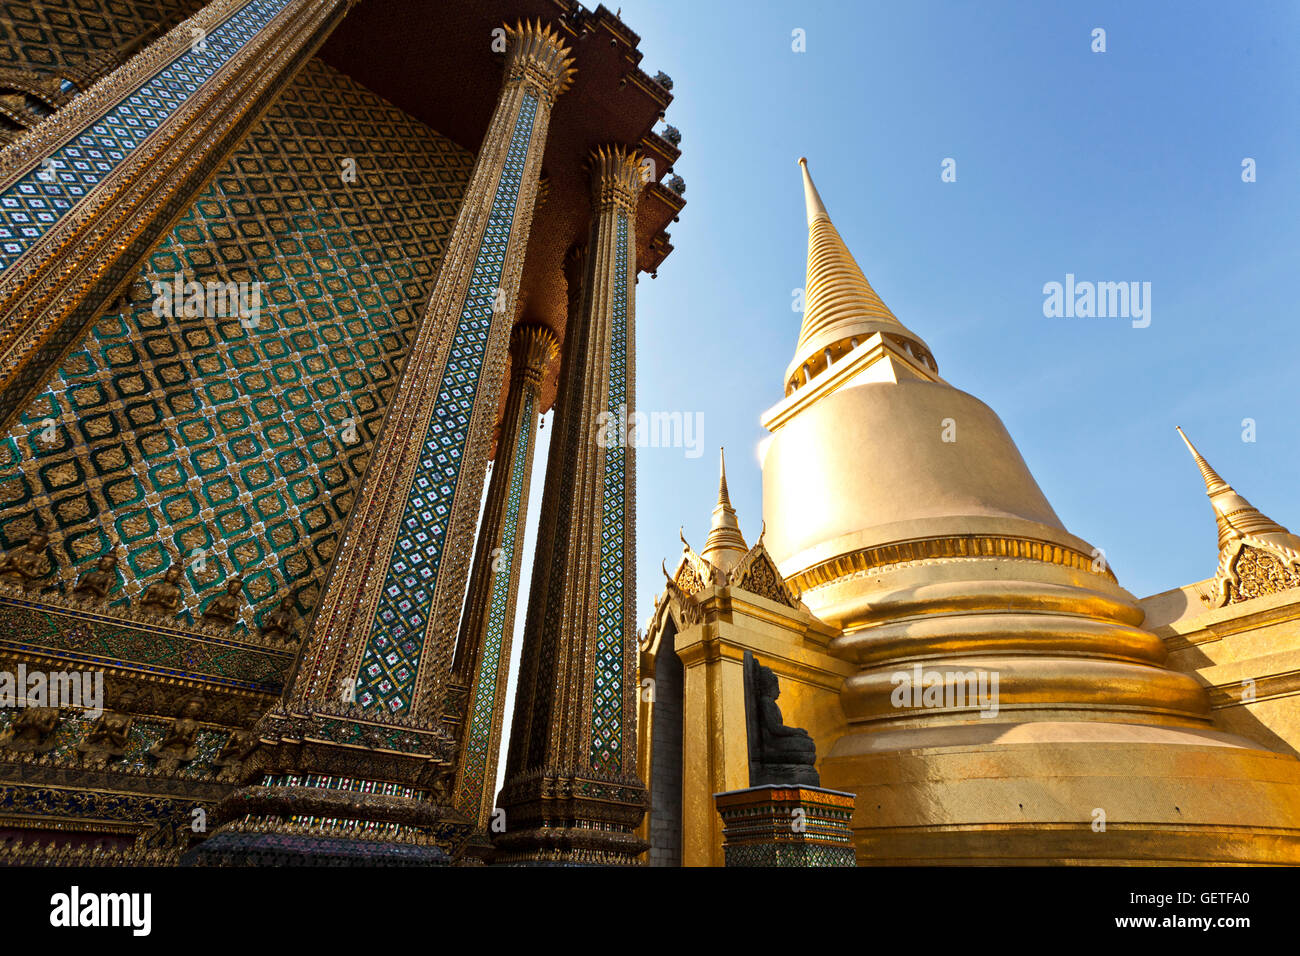 The Royal Palace in Bangkok. Stock Photo